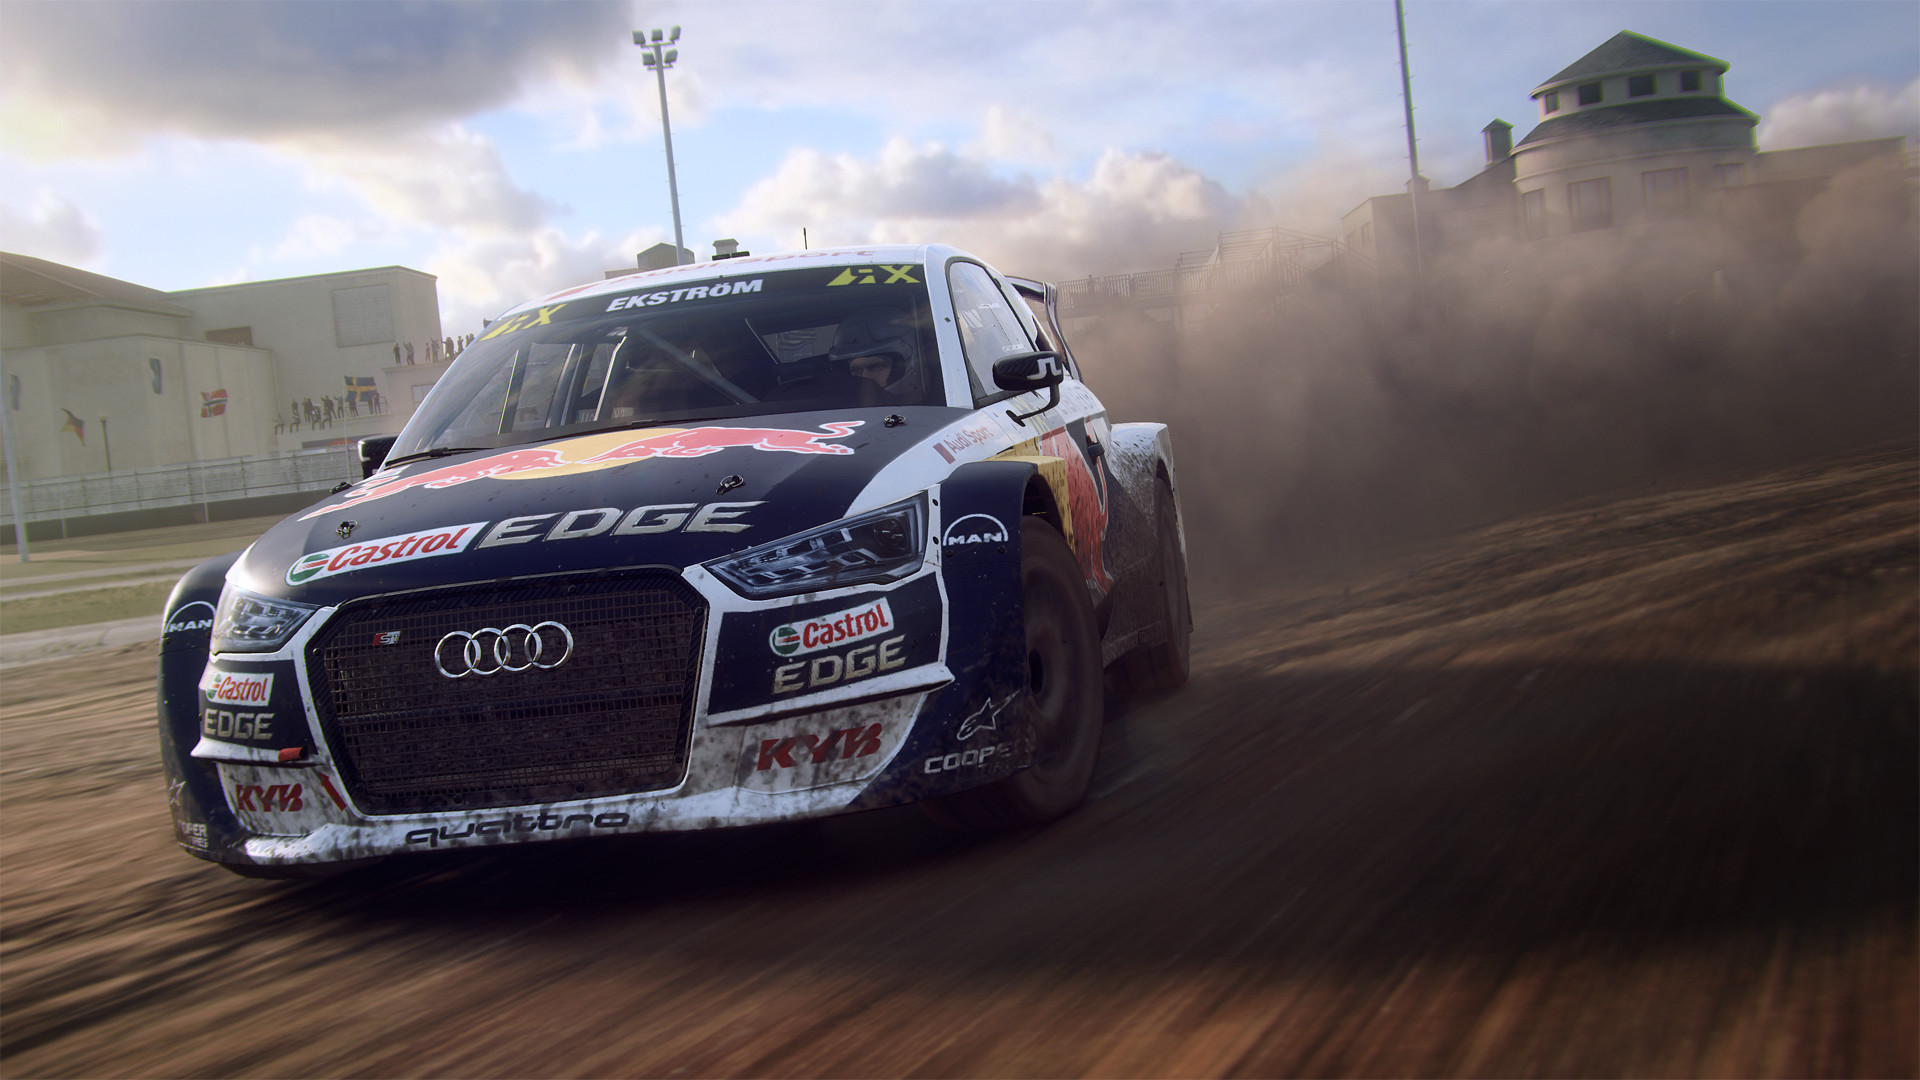 Dirt Rally 2.0 VR racing car driving in dirt